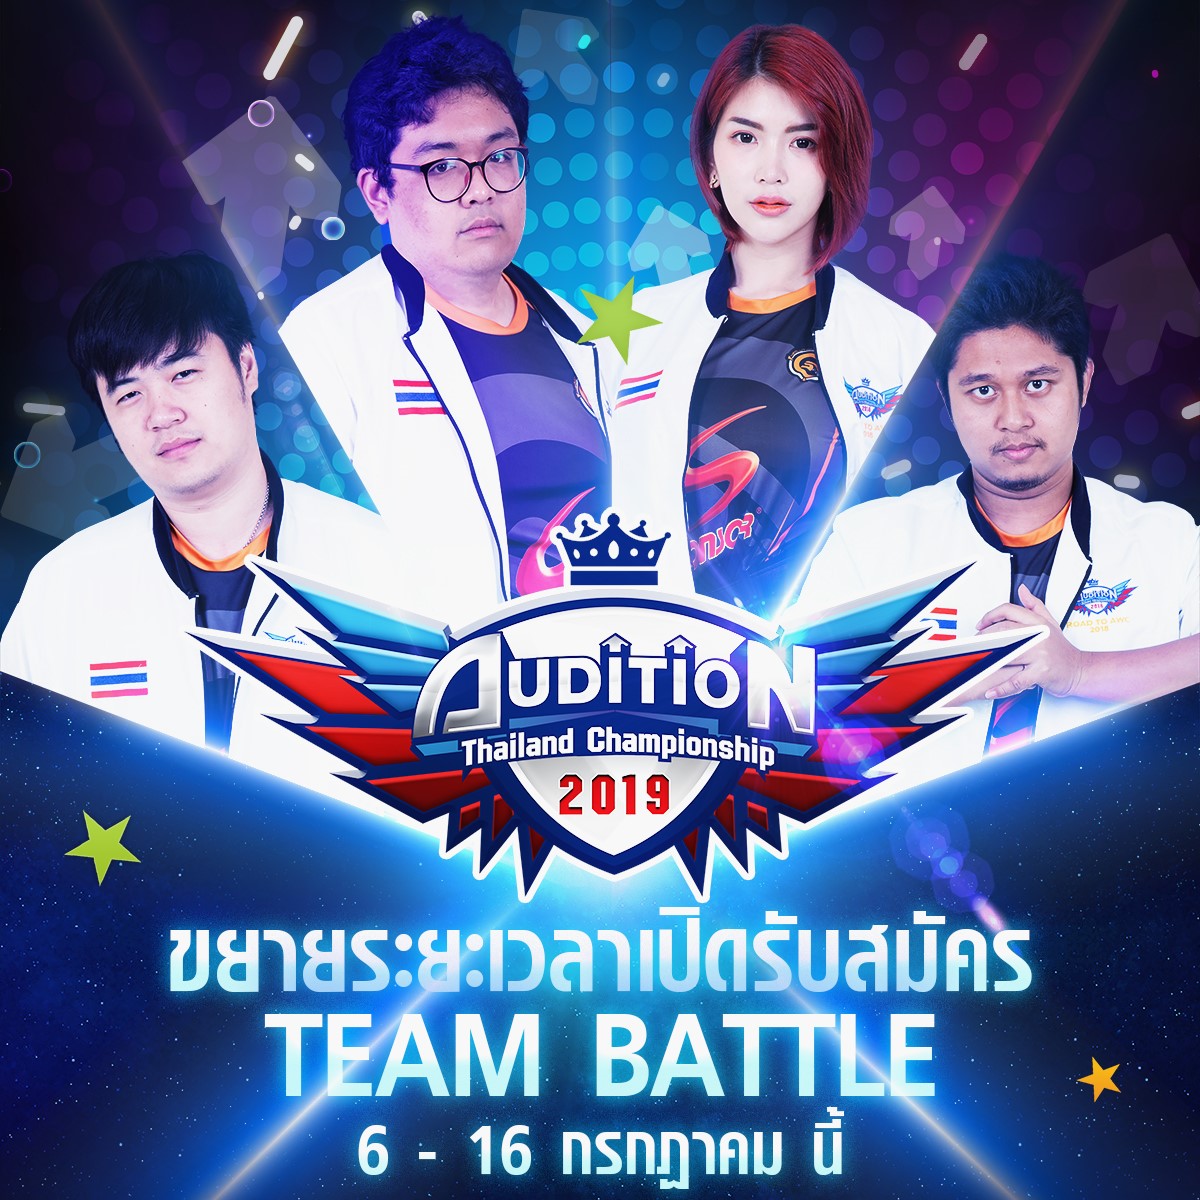 [ขยายเวลารับสมัคร TEAM Battle] AUDITION THAILAND CHAMPIONSHIP 2019 